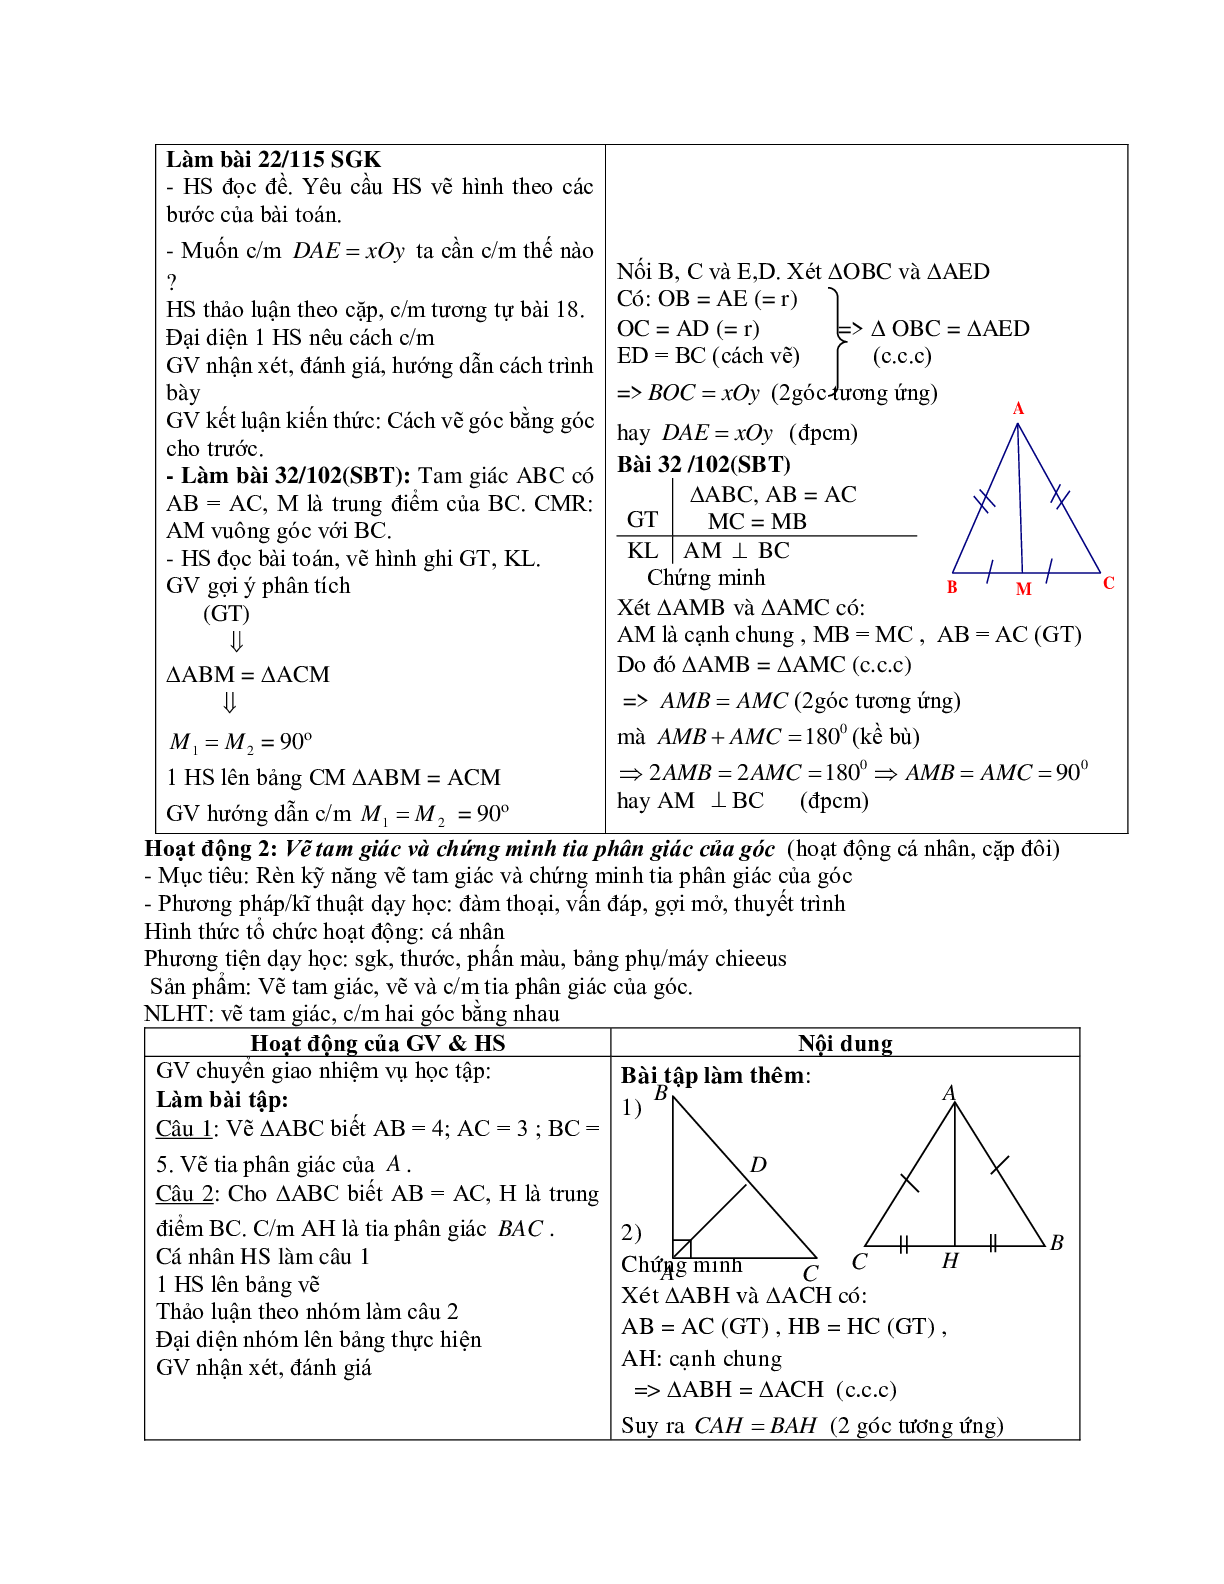 Giáo án Toán 7 bài 3: Trường hợp bằng nhau thứ nhất của tam giác cạnh - cạnh - cạnh mới nhất (trang 8)